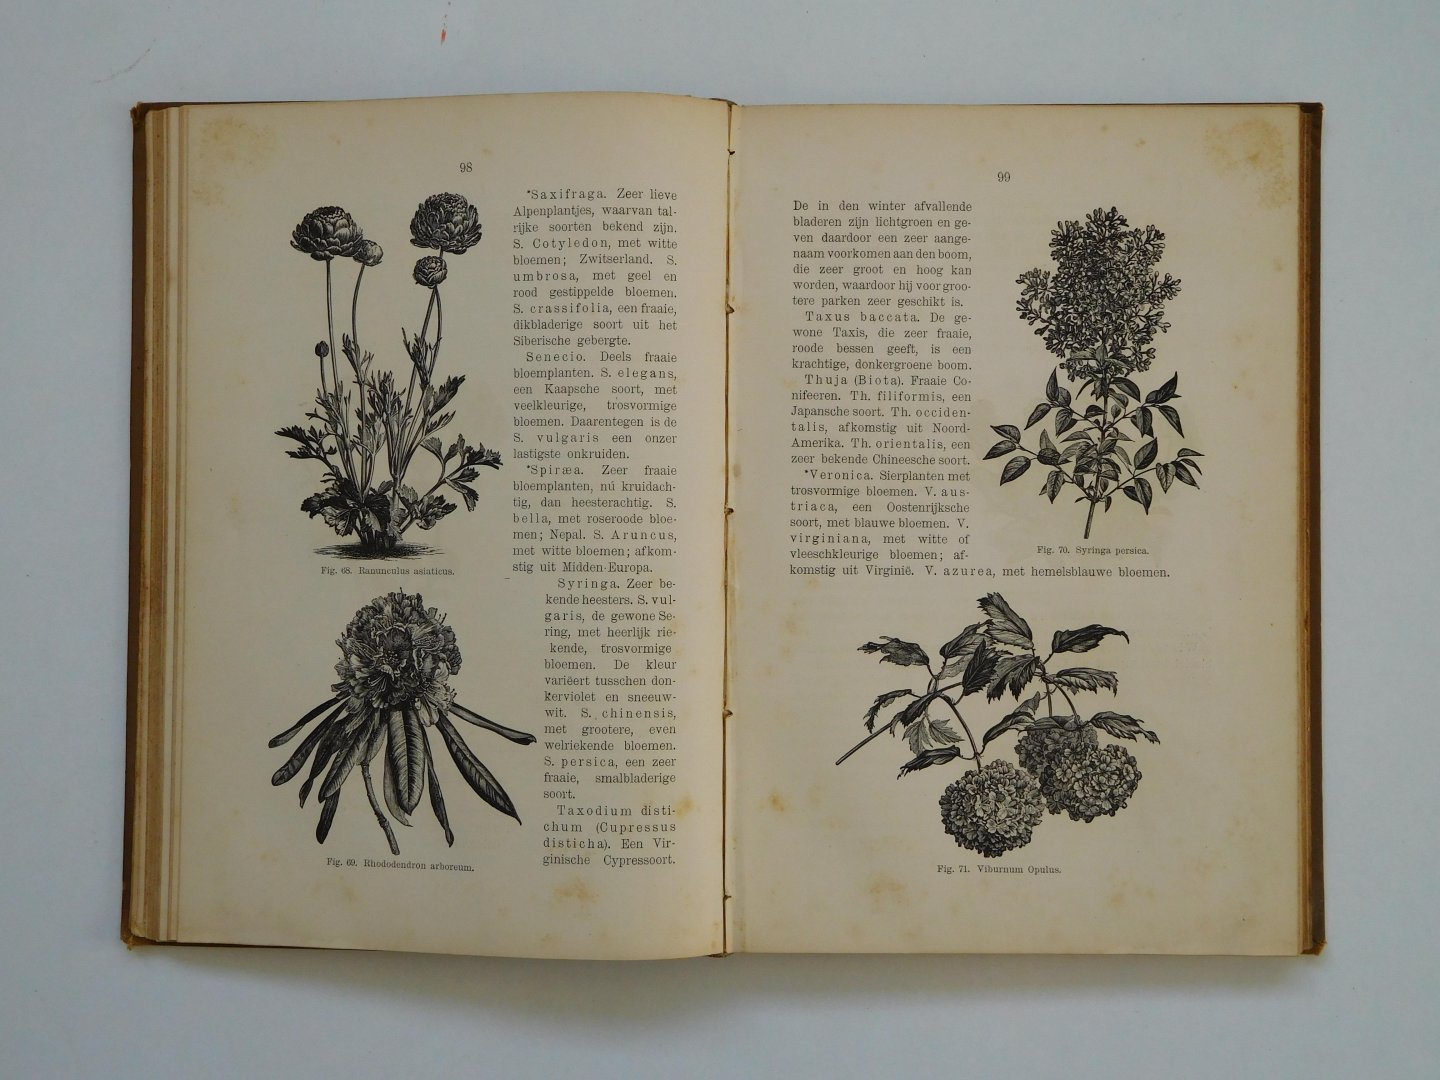 Witte, E.Th. - Handleiding tot het kweeken van planten in huis